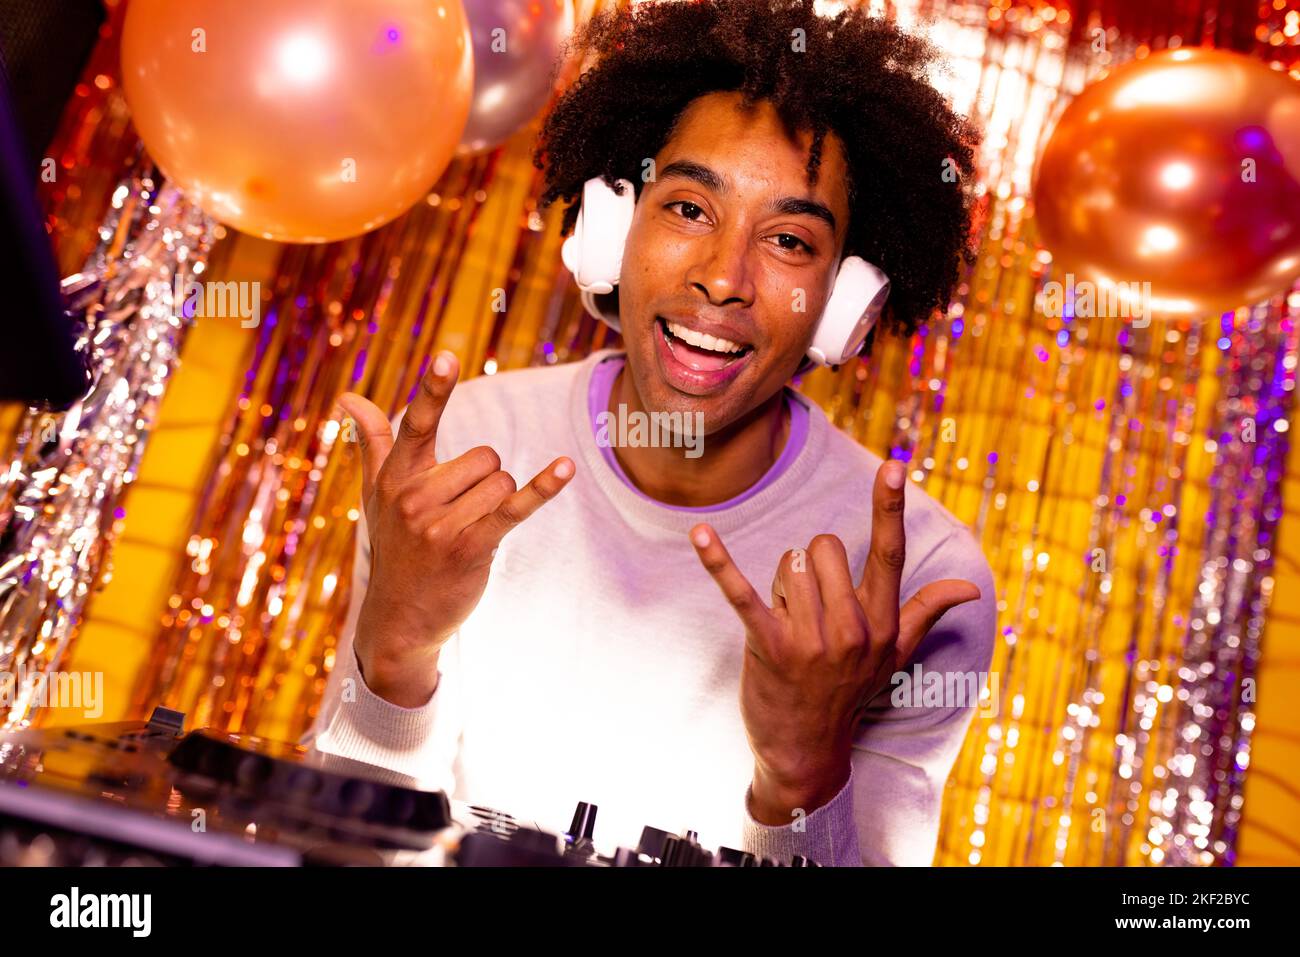 Portrait d'un DJ afro-américain souriant dans un casque jouant de la musique dans une boîte de nuit gestante Banque D'Images